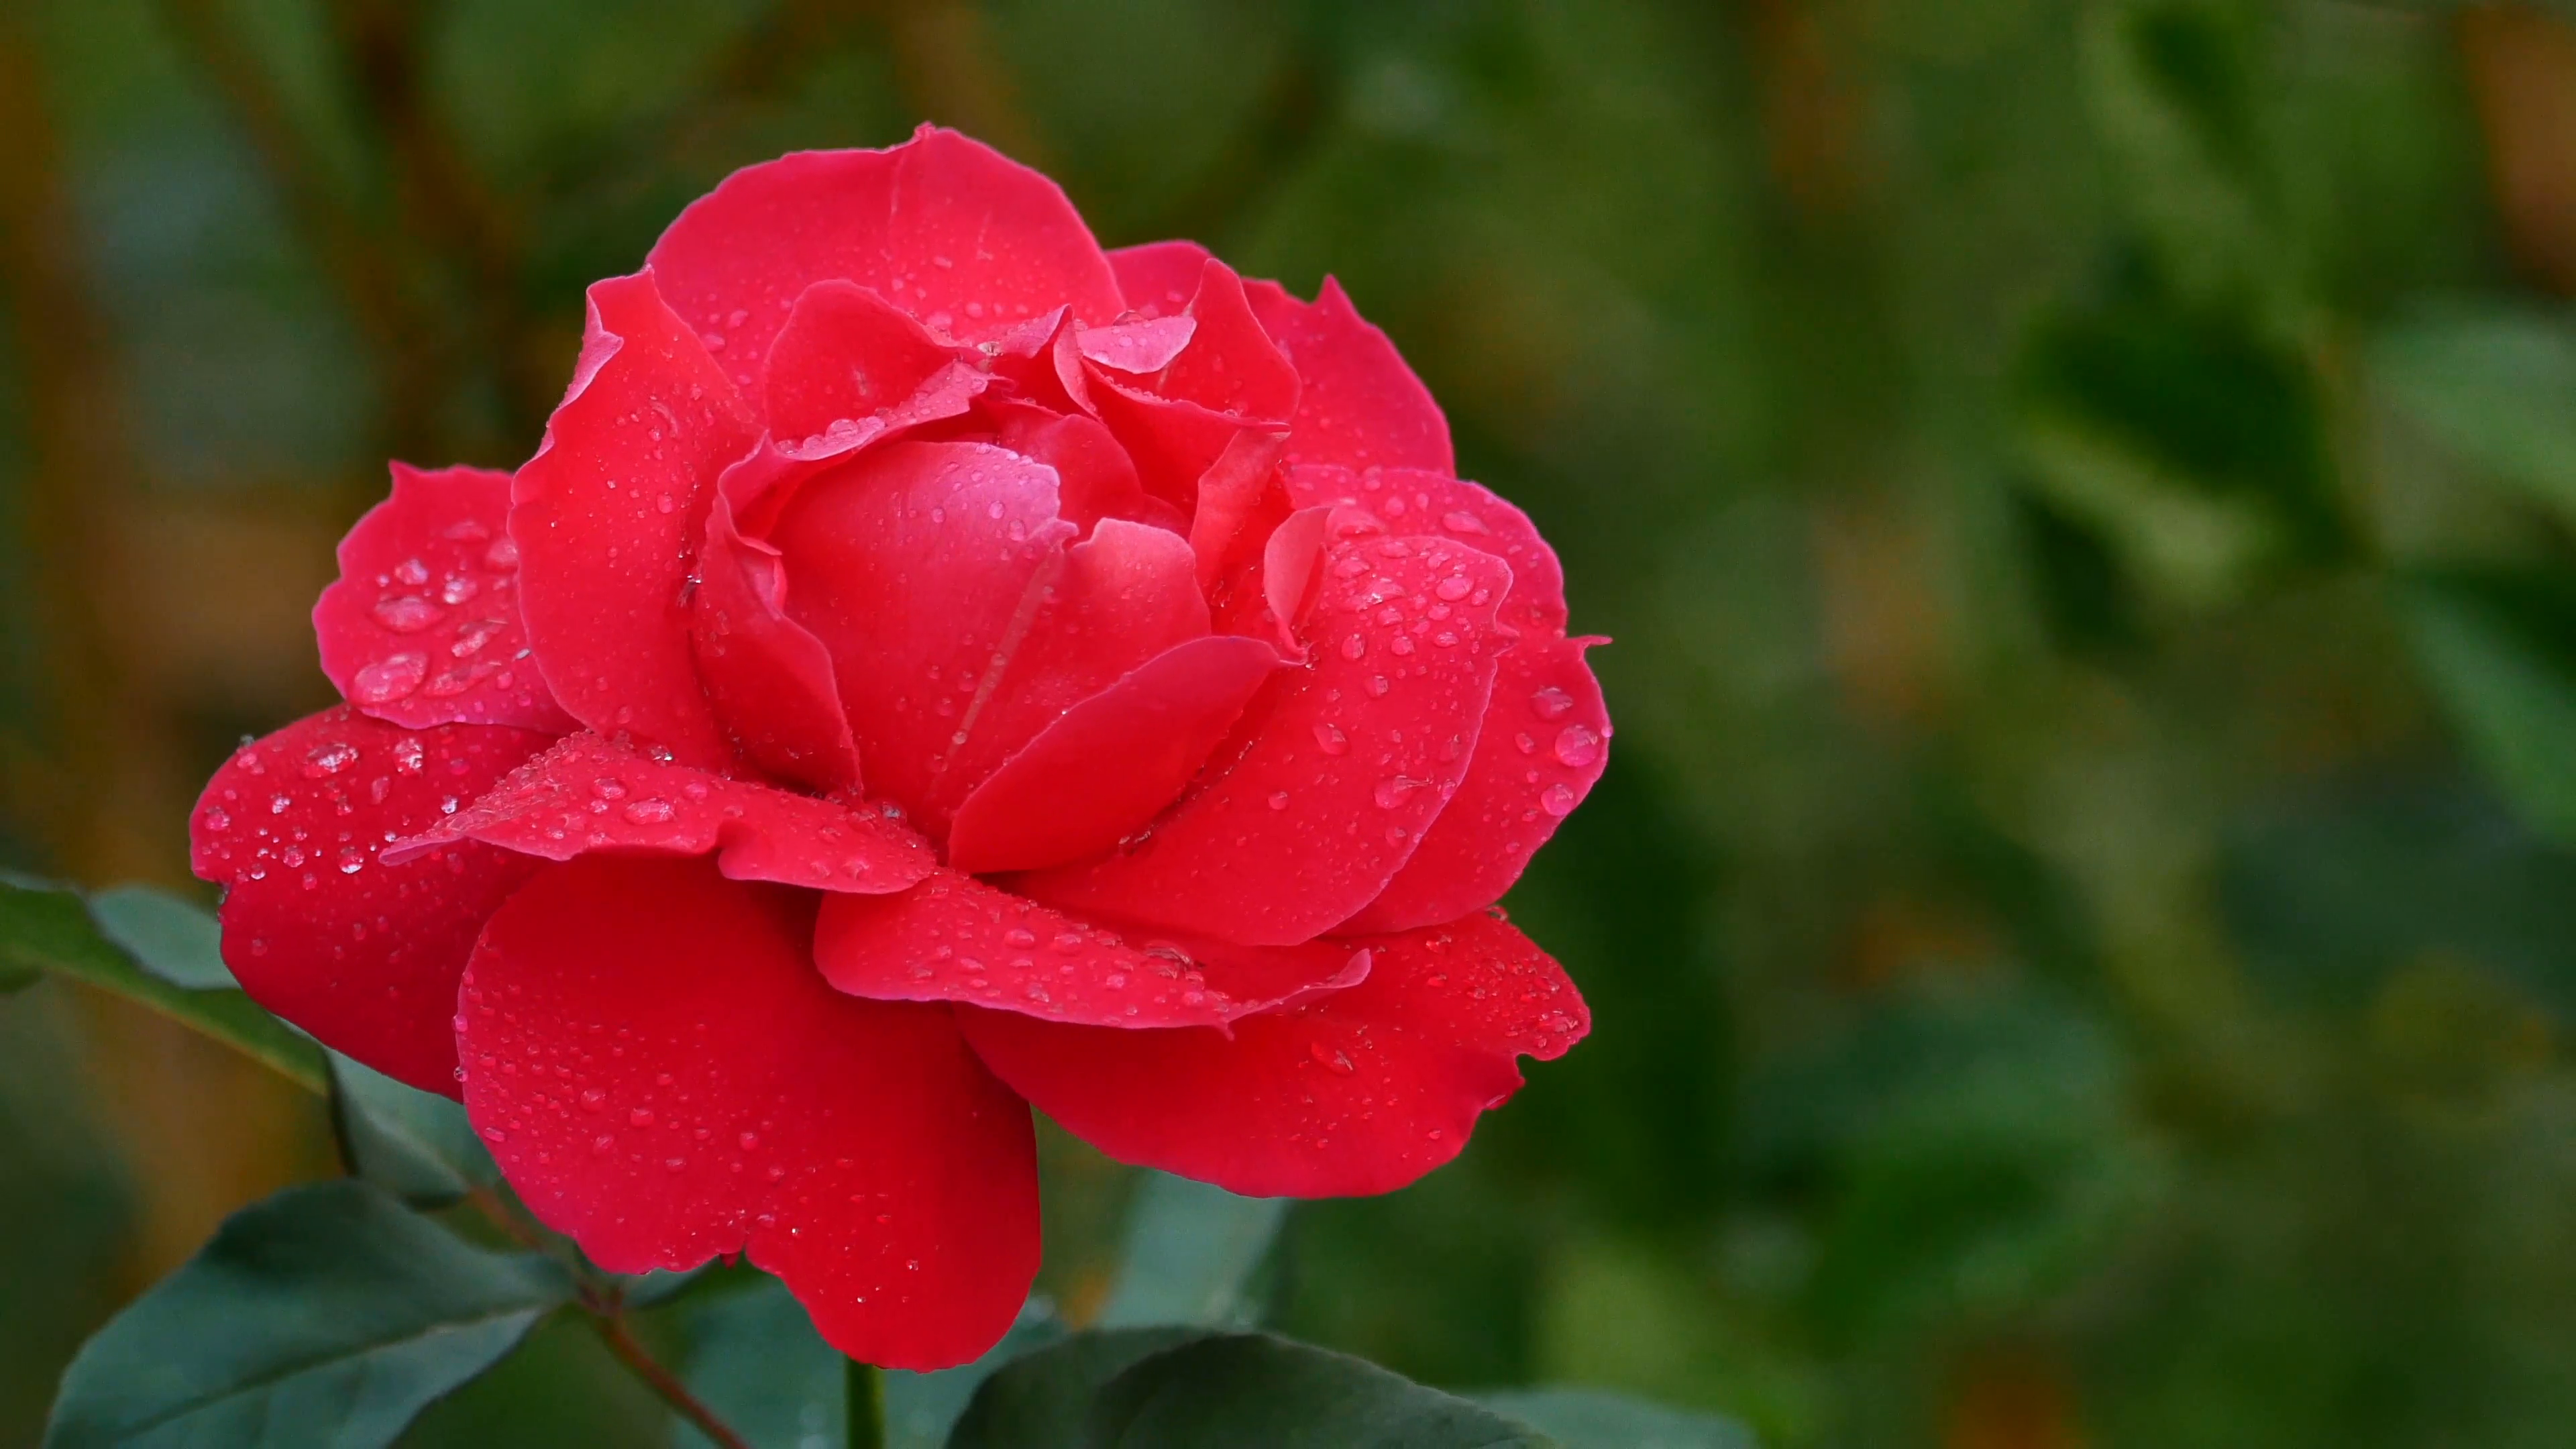 Hình nền hoa hồng đỏ đẹp